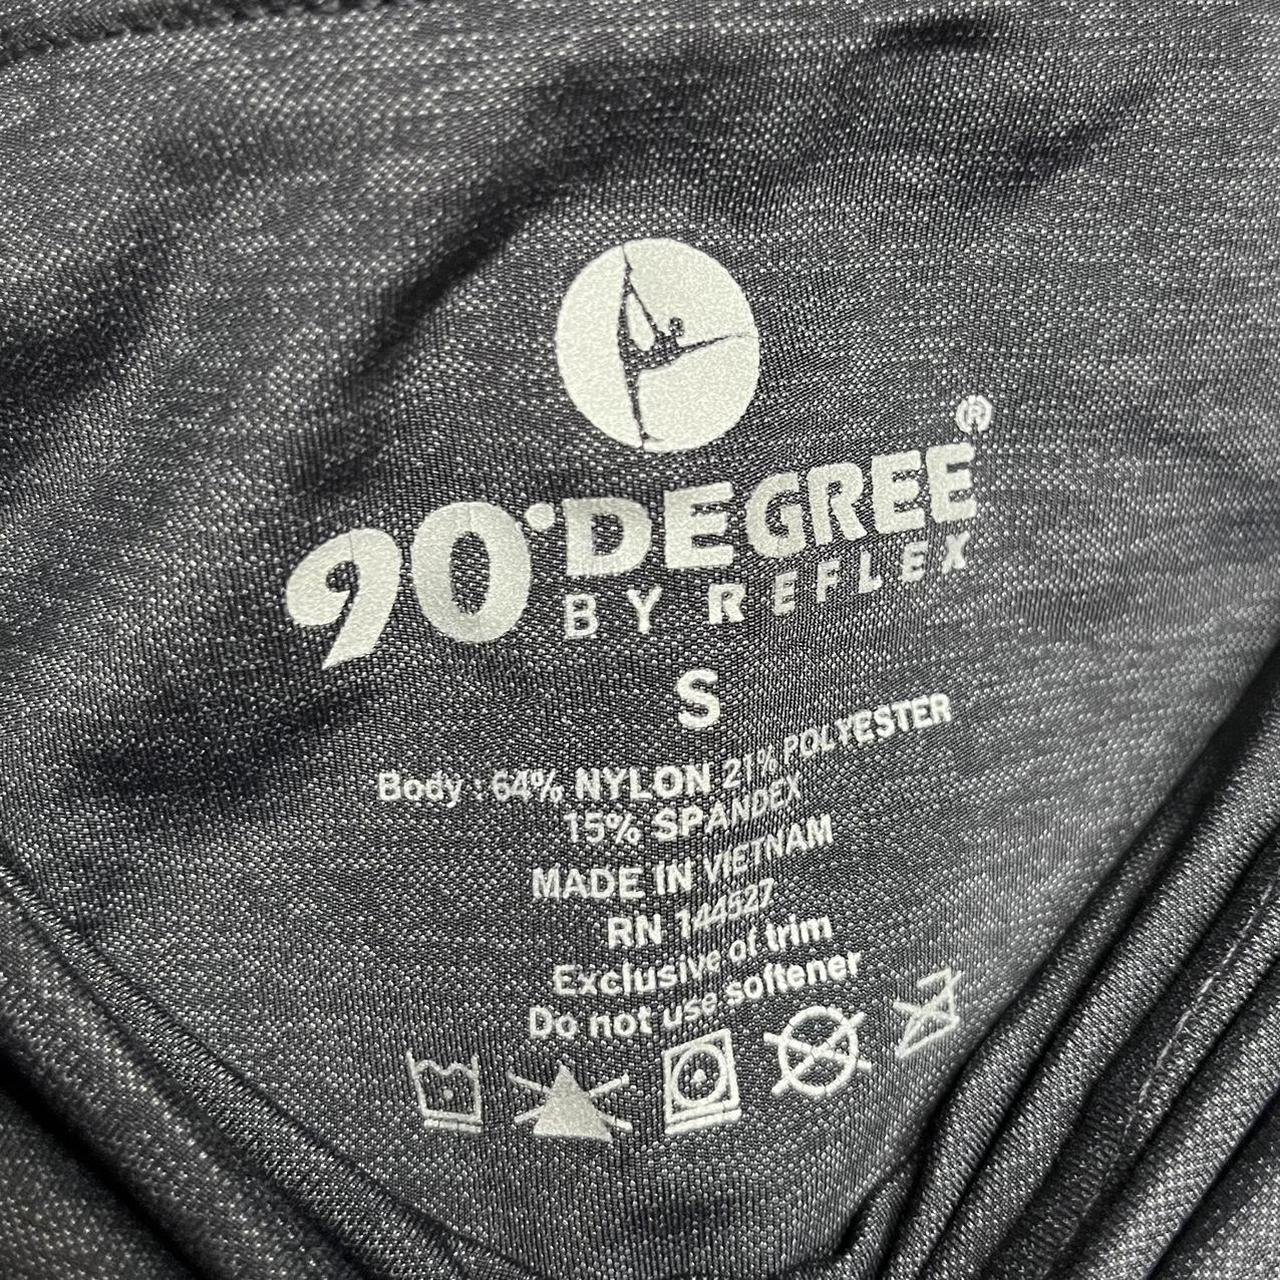 90 degree by reflex women's leggings in a dark gray - Depop